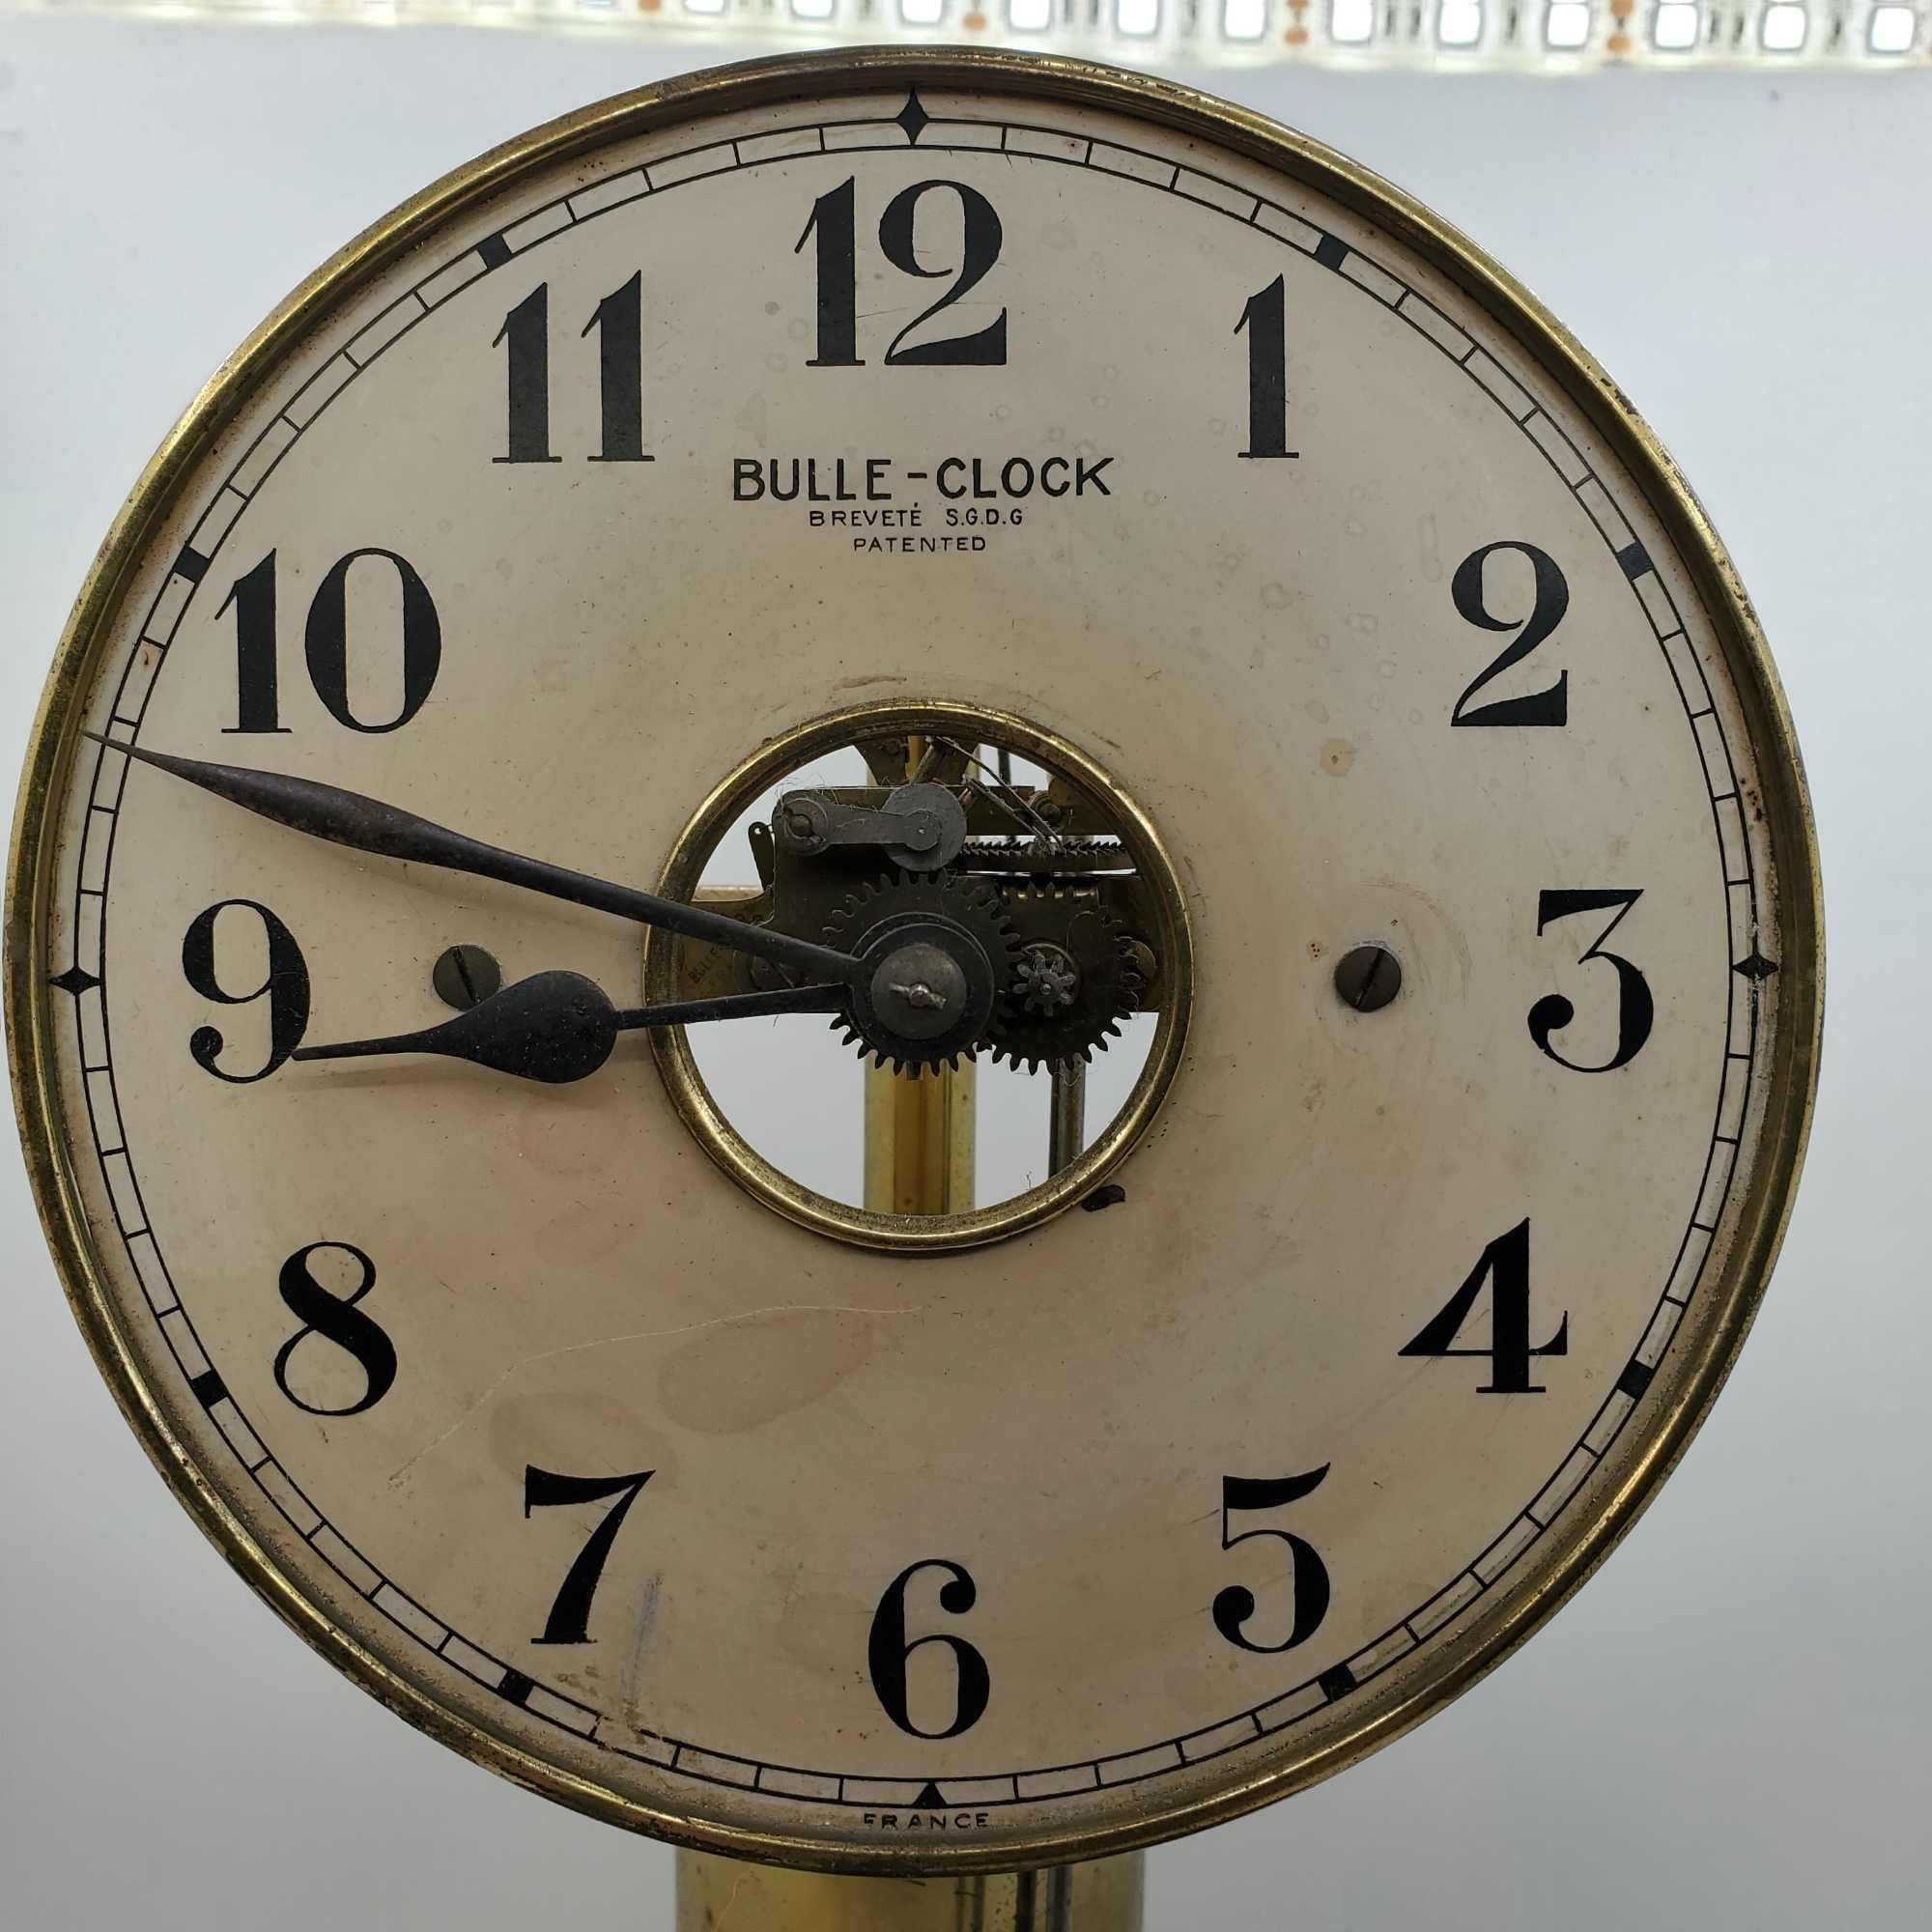 French Bulle-Clock Brevette S.G.D.G. 1926-1928 {As Found}